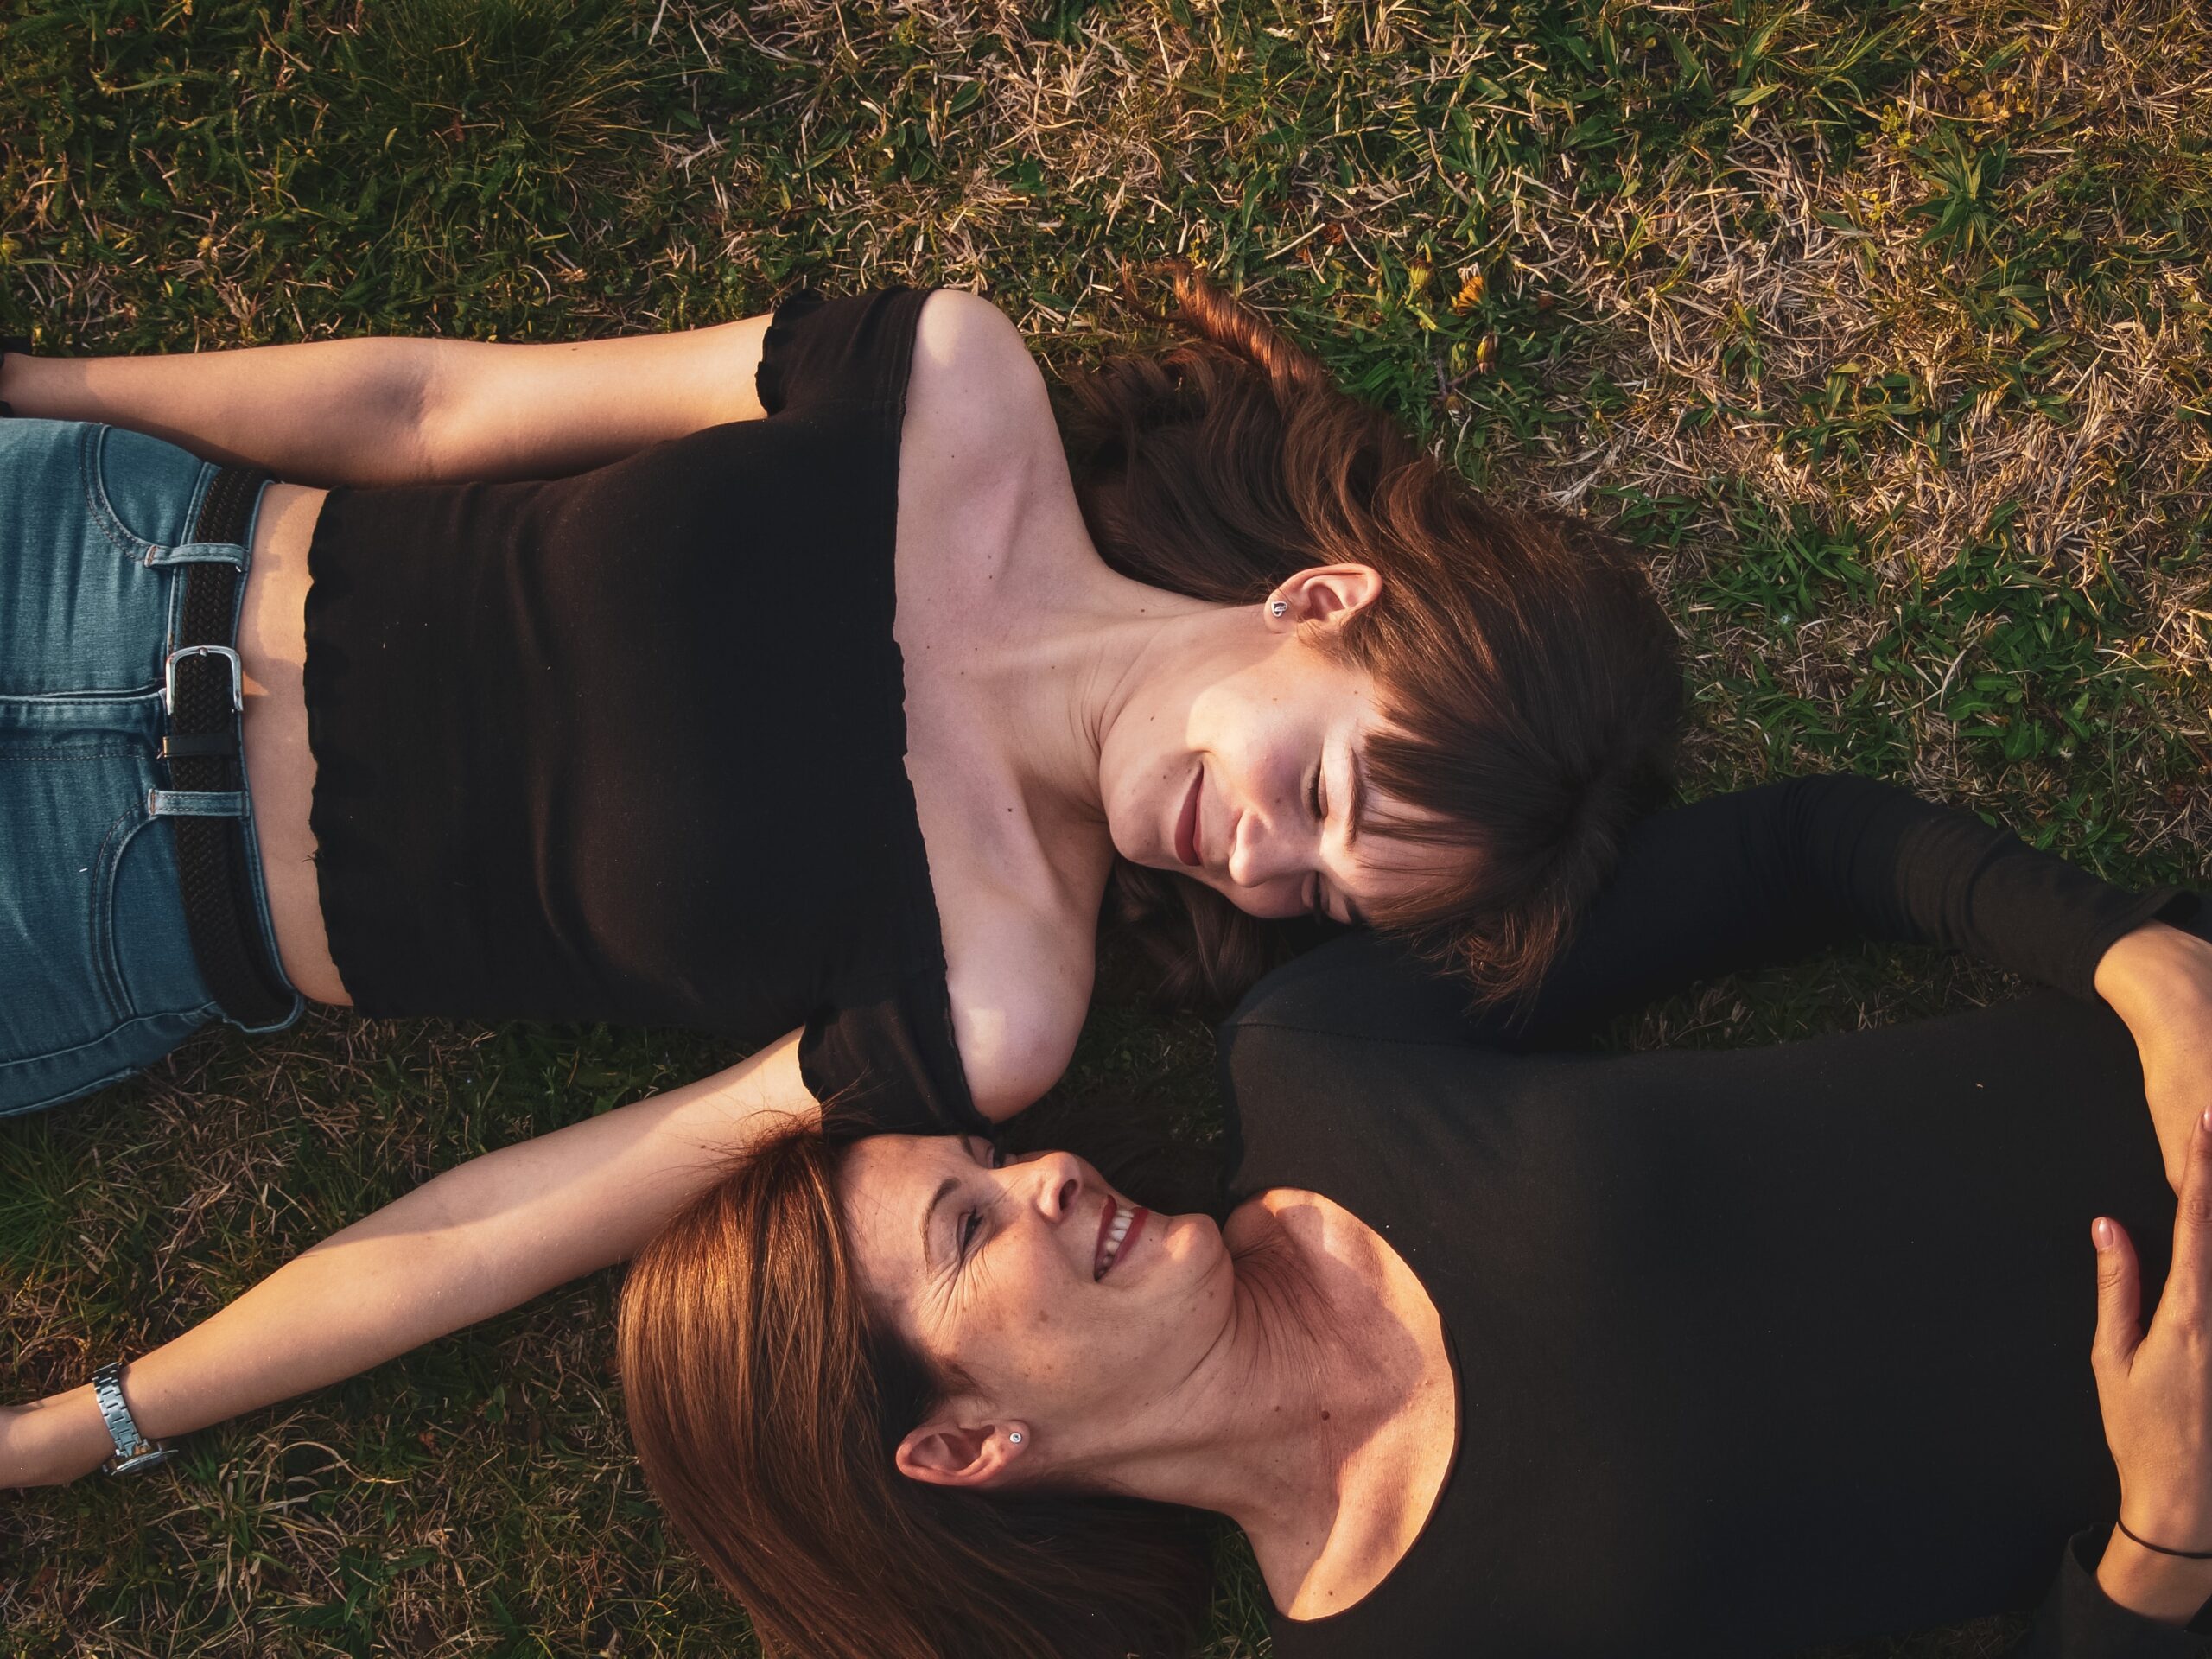 2 vrouwen die in het gras liggen, zon op de huid. Ze kijken elkaar aan terwijl ze lachen.